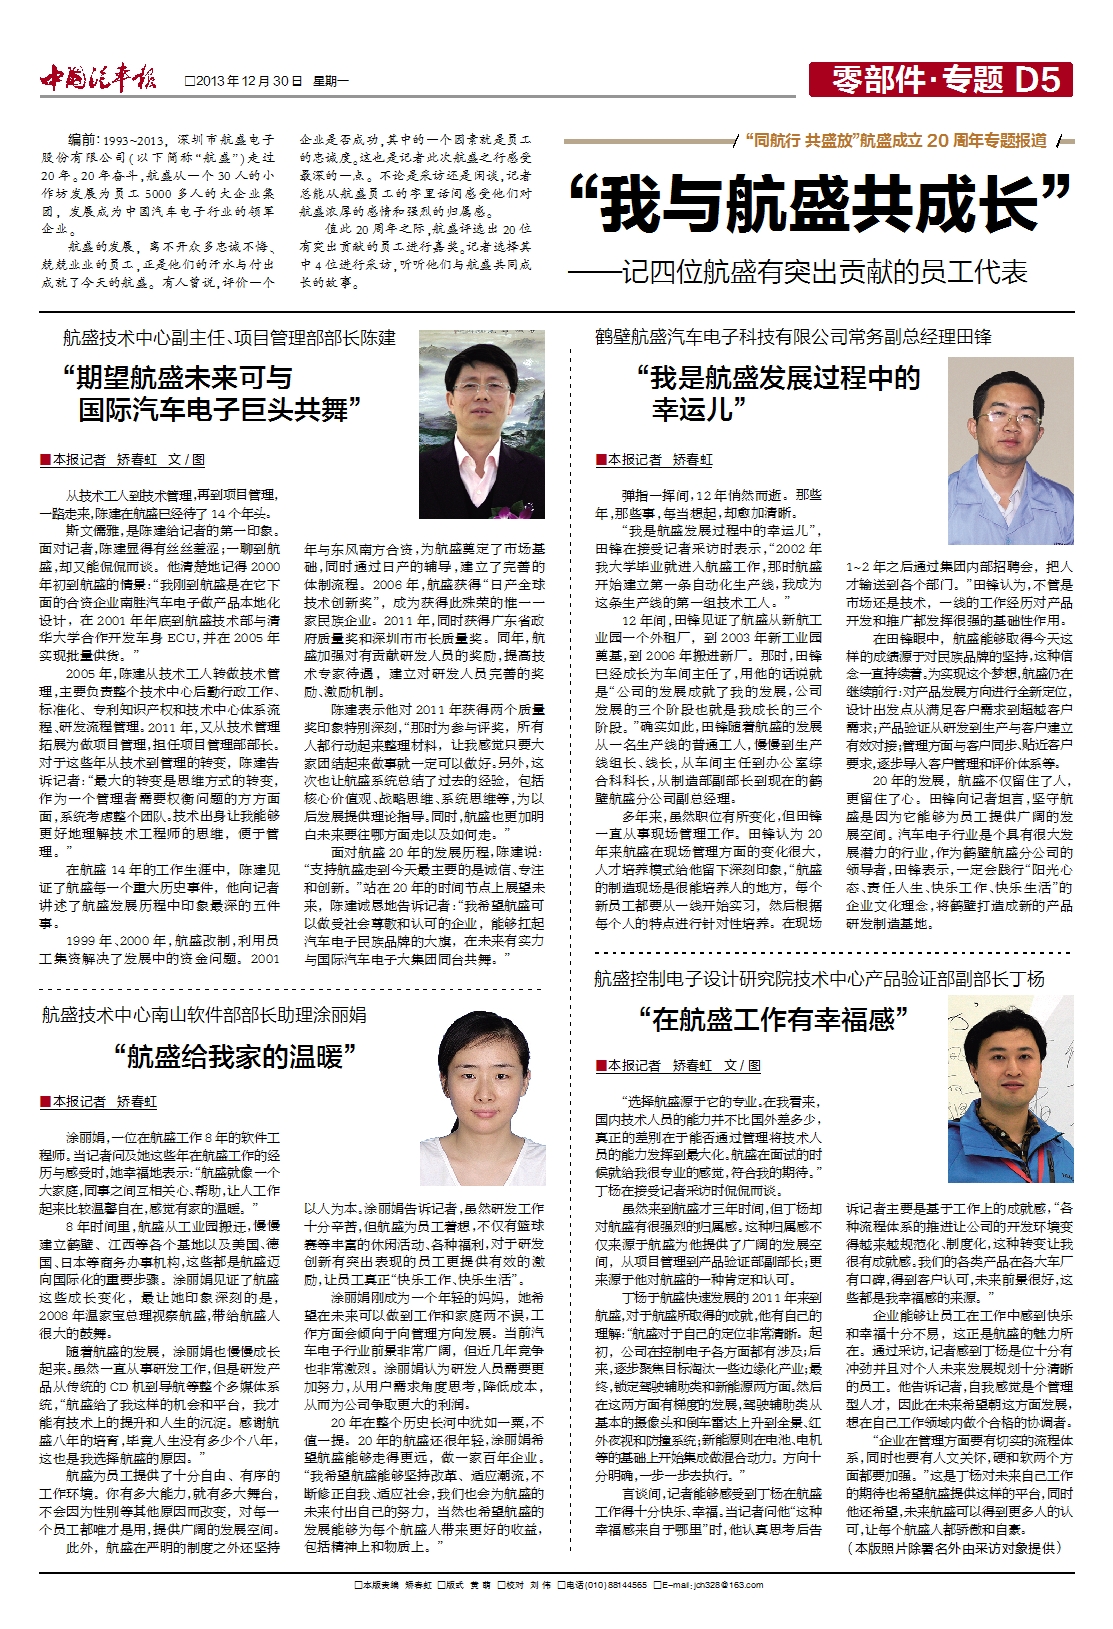 “我与航盛共成长”——转自《中国汽车报》 记四位航盛有突出贡献的员工代表